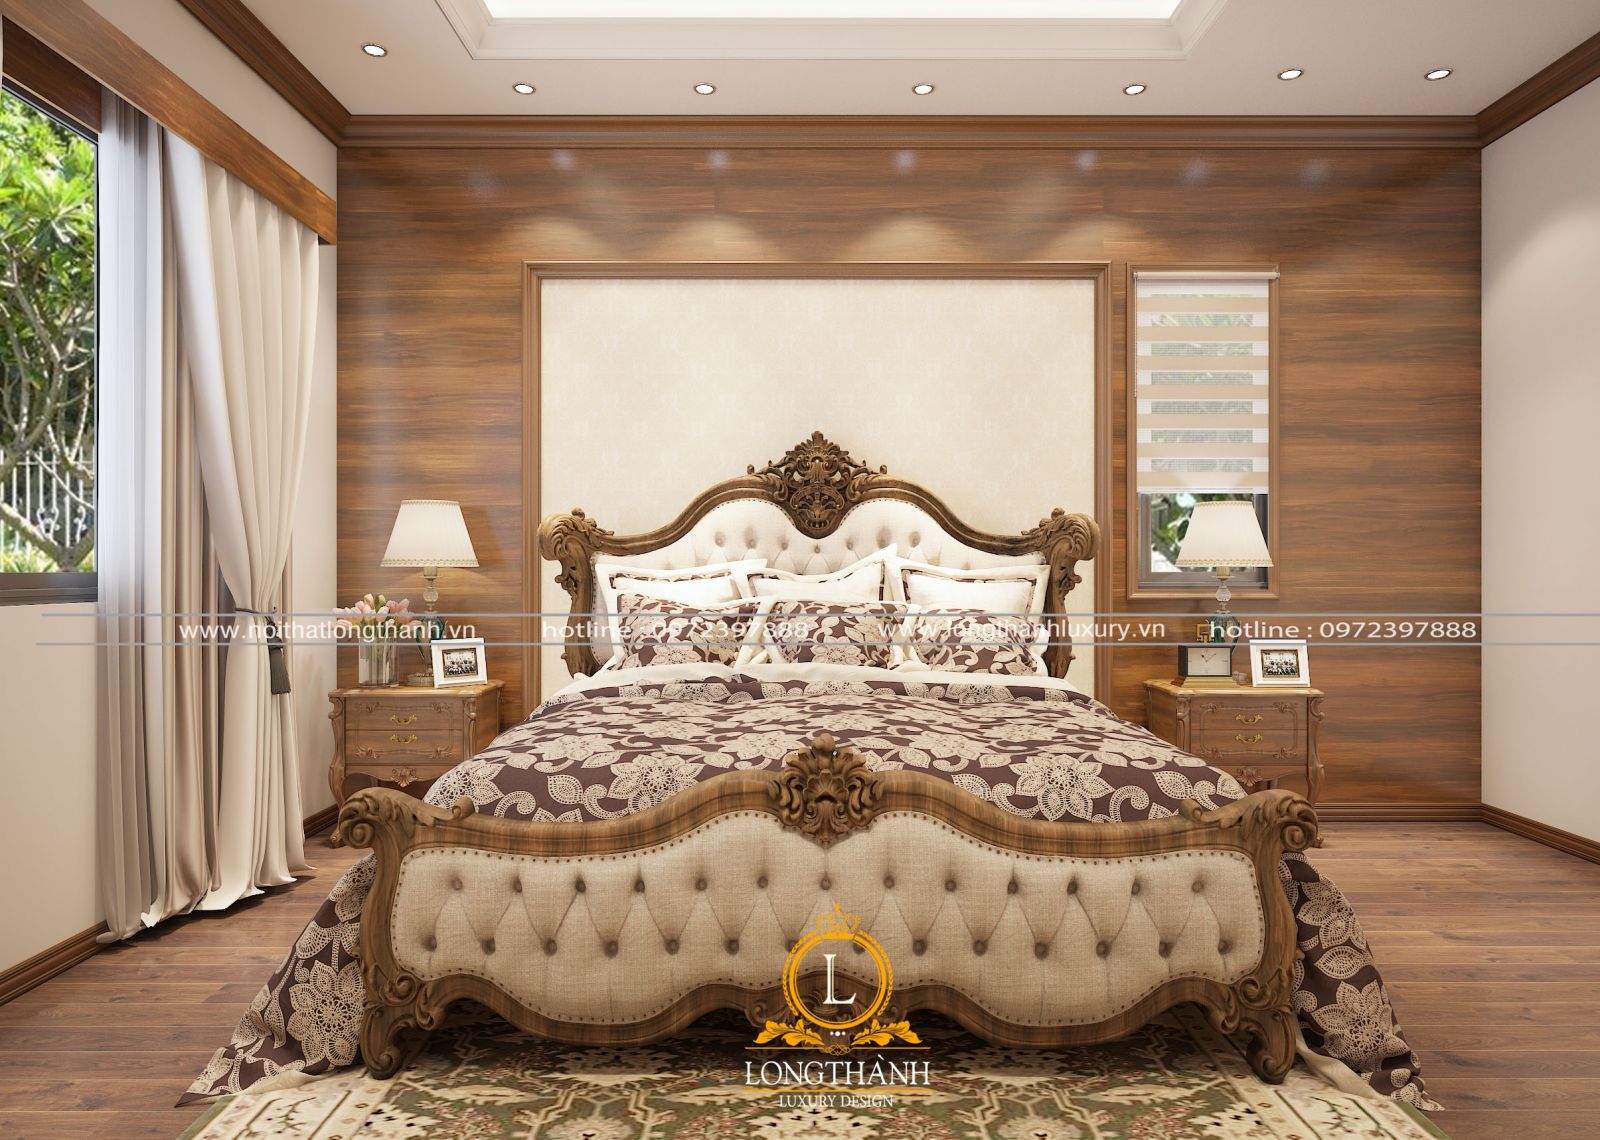 Giường ngủ gỗ tự nhiên cao cấp